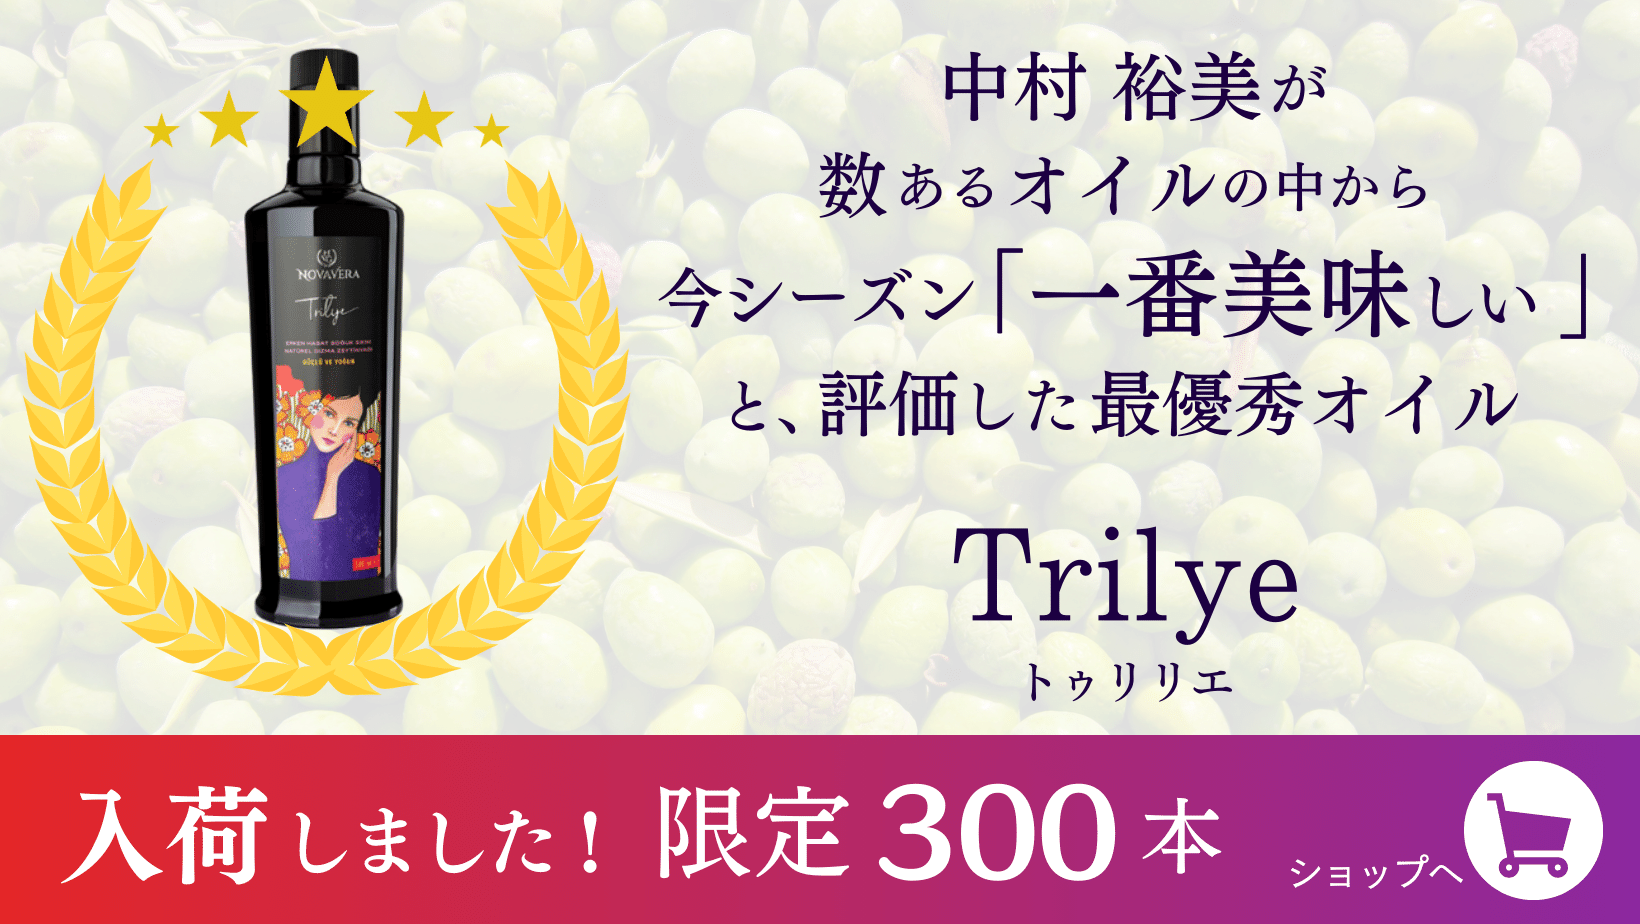 中村裕美が数あるオイルの中から今シーズン「一番美味しい」と、評価した最優秀オイル　Trilye(トゥリリエ) 入荷しました！　限定300本